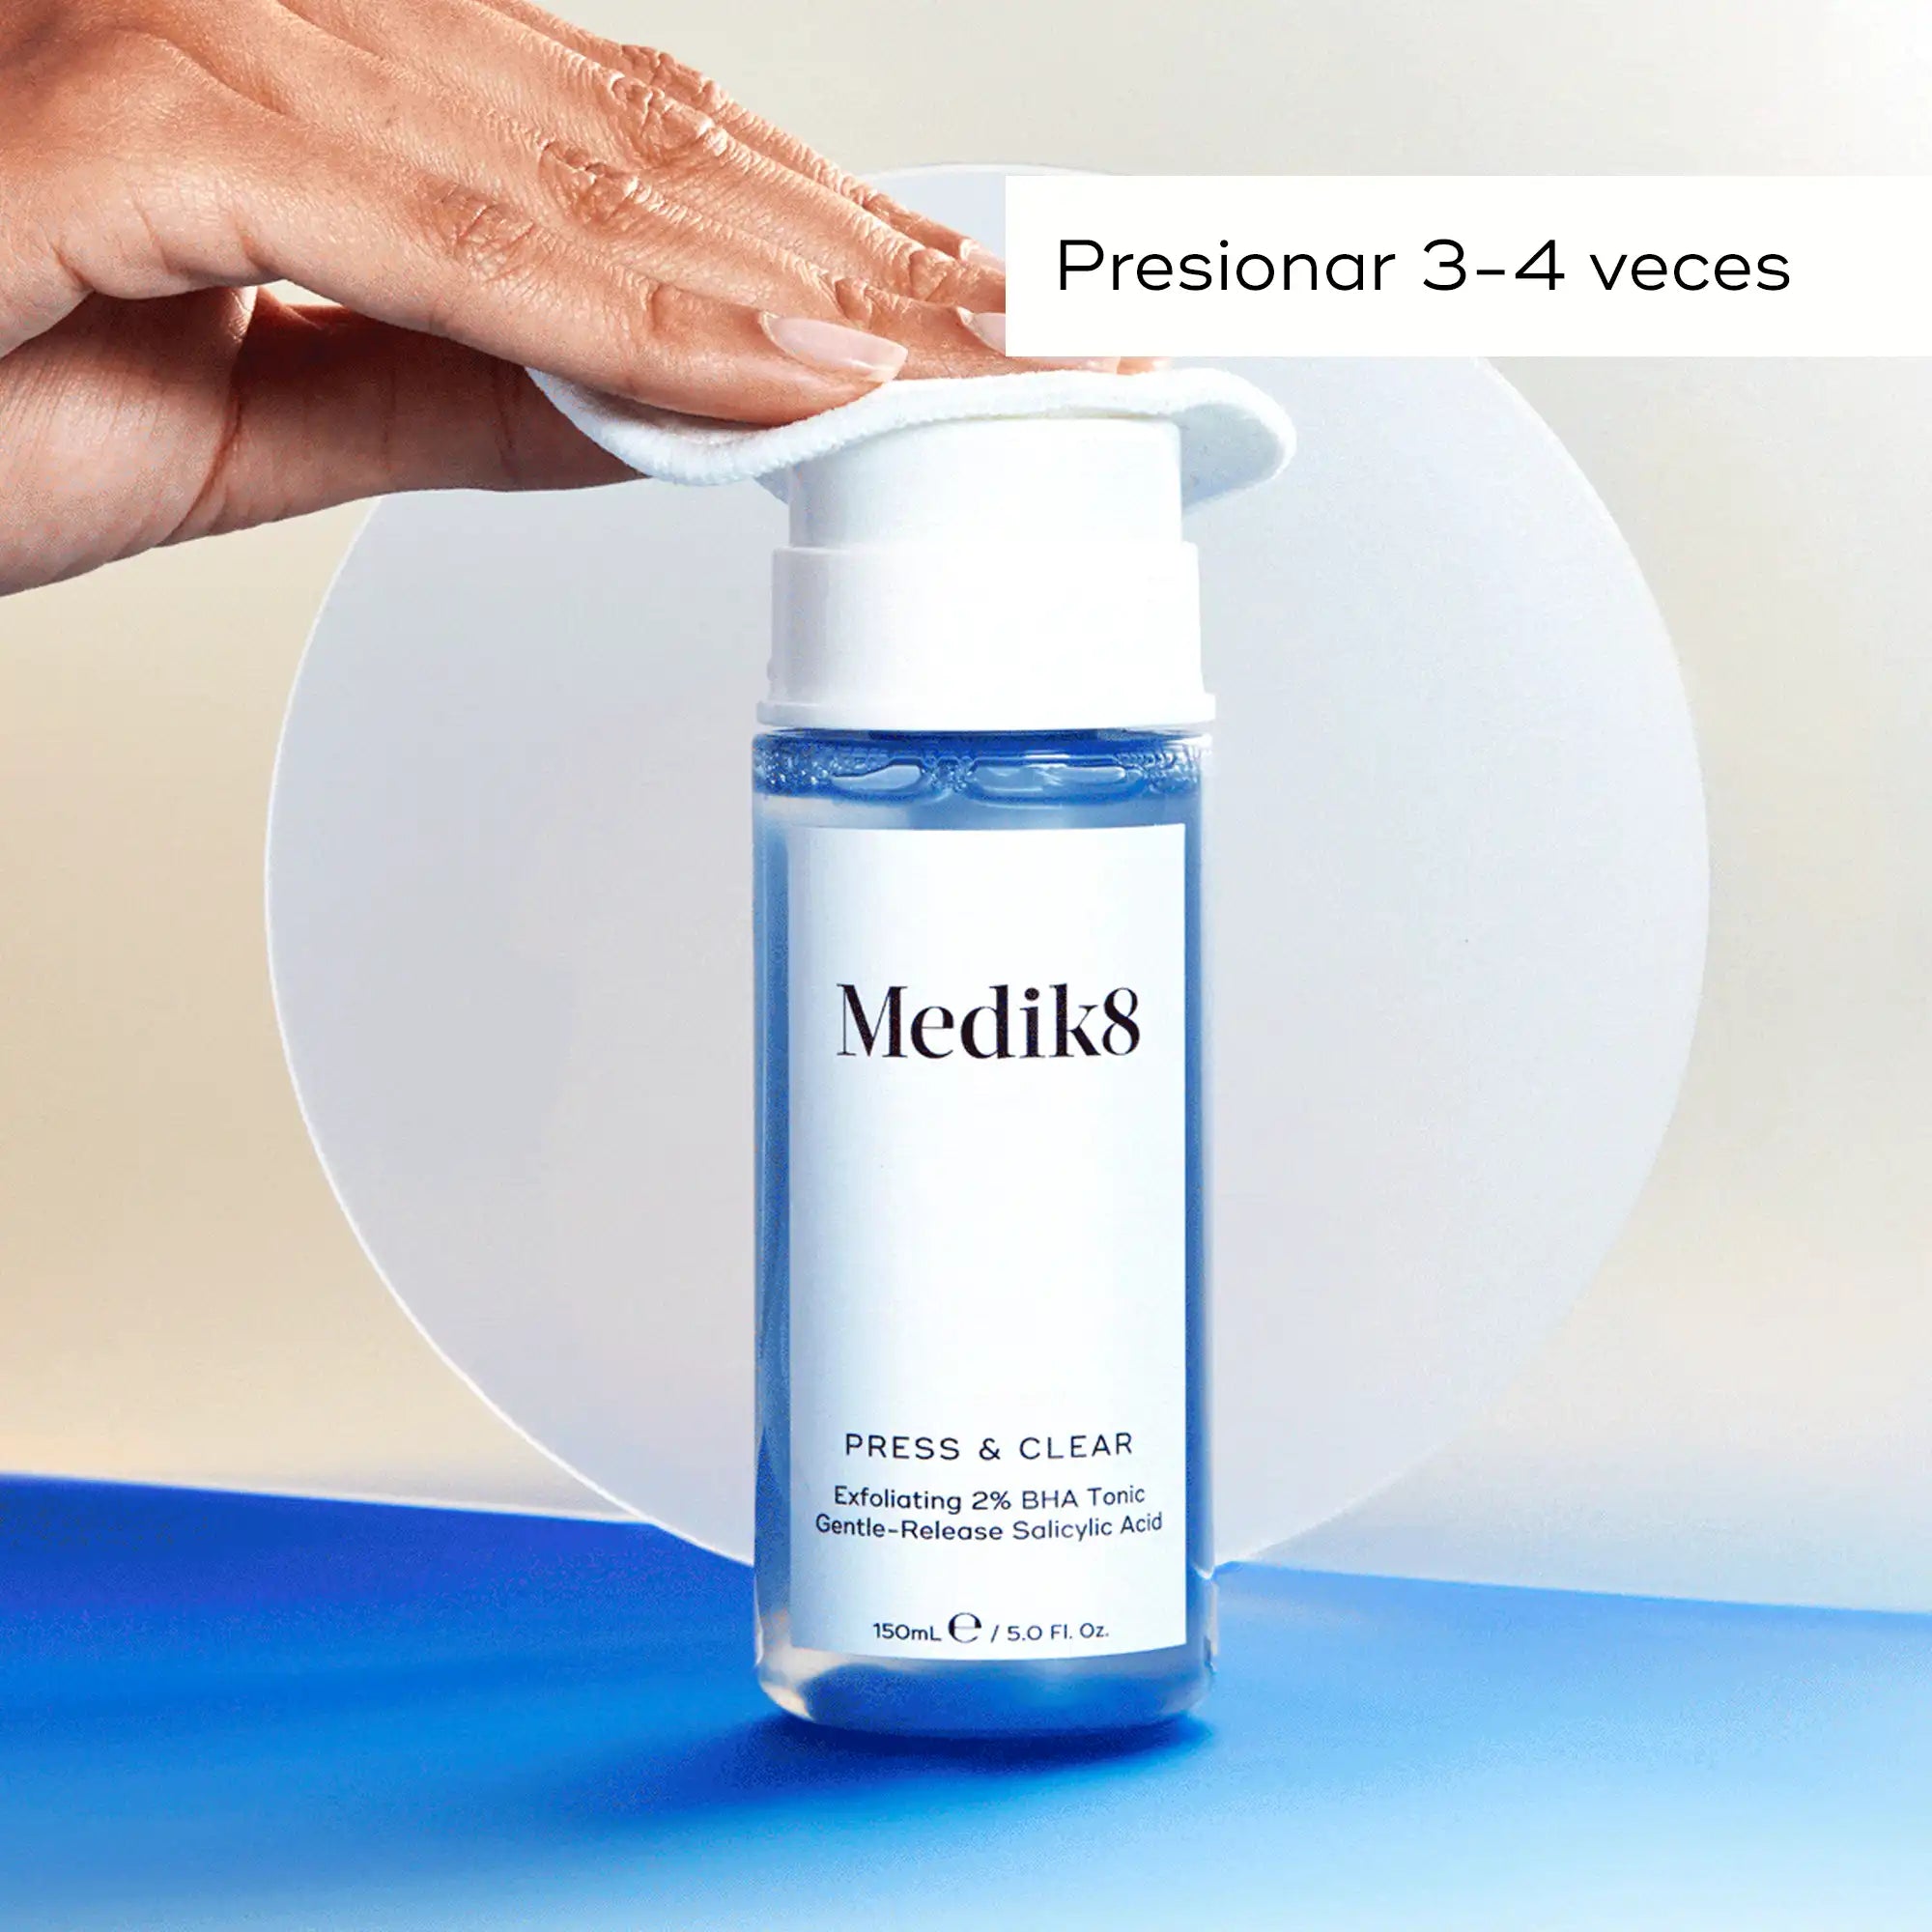 Press & Clear de Medik8 tónico con ácidos exfoliantes modo de aplicación